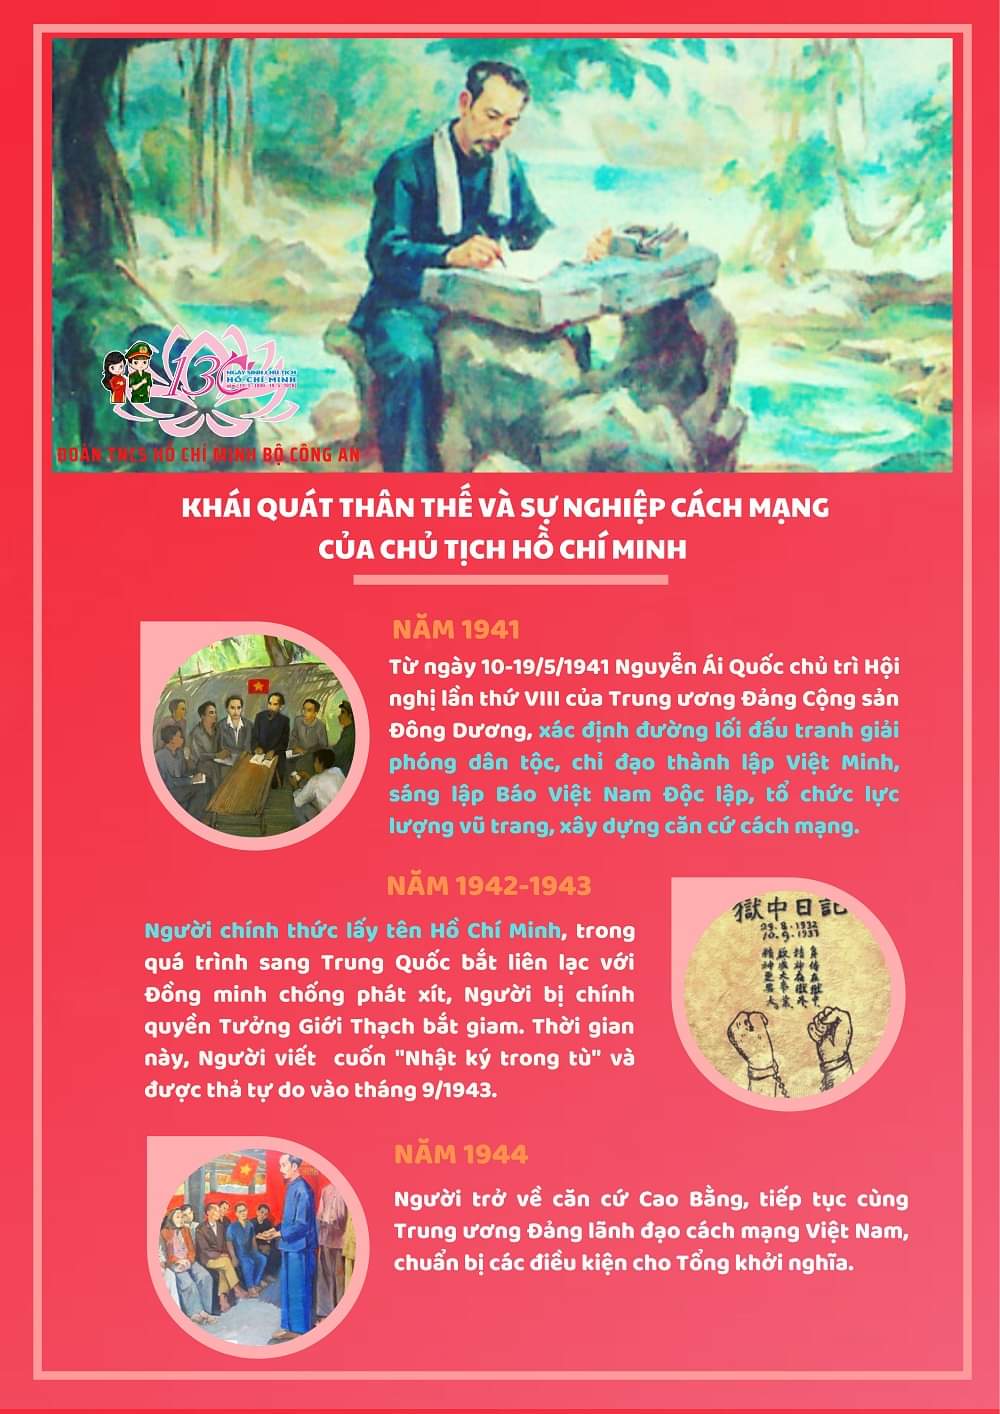 Khái quát thân thế  cuộc đời và sự nghiệp cách mạng của Chủ tịch Hồ Chí Minh.